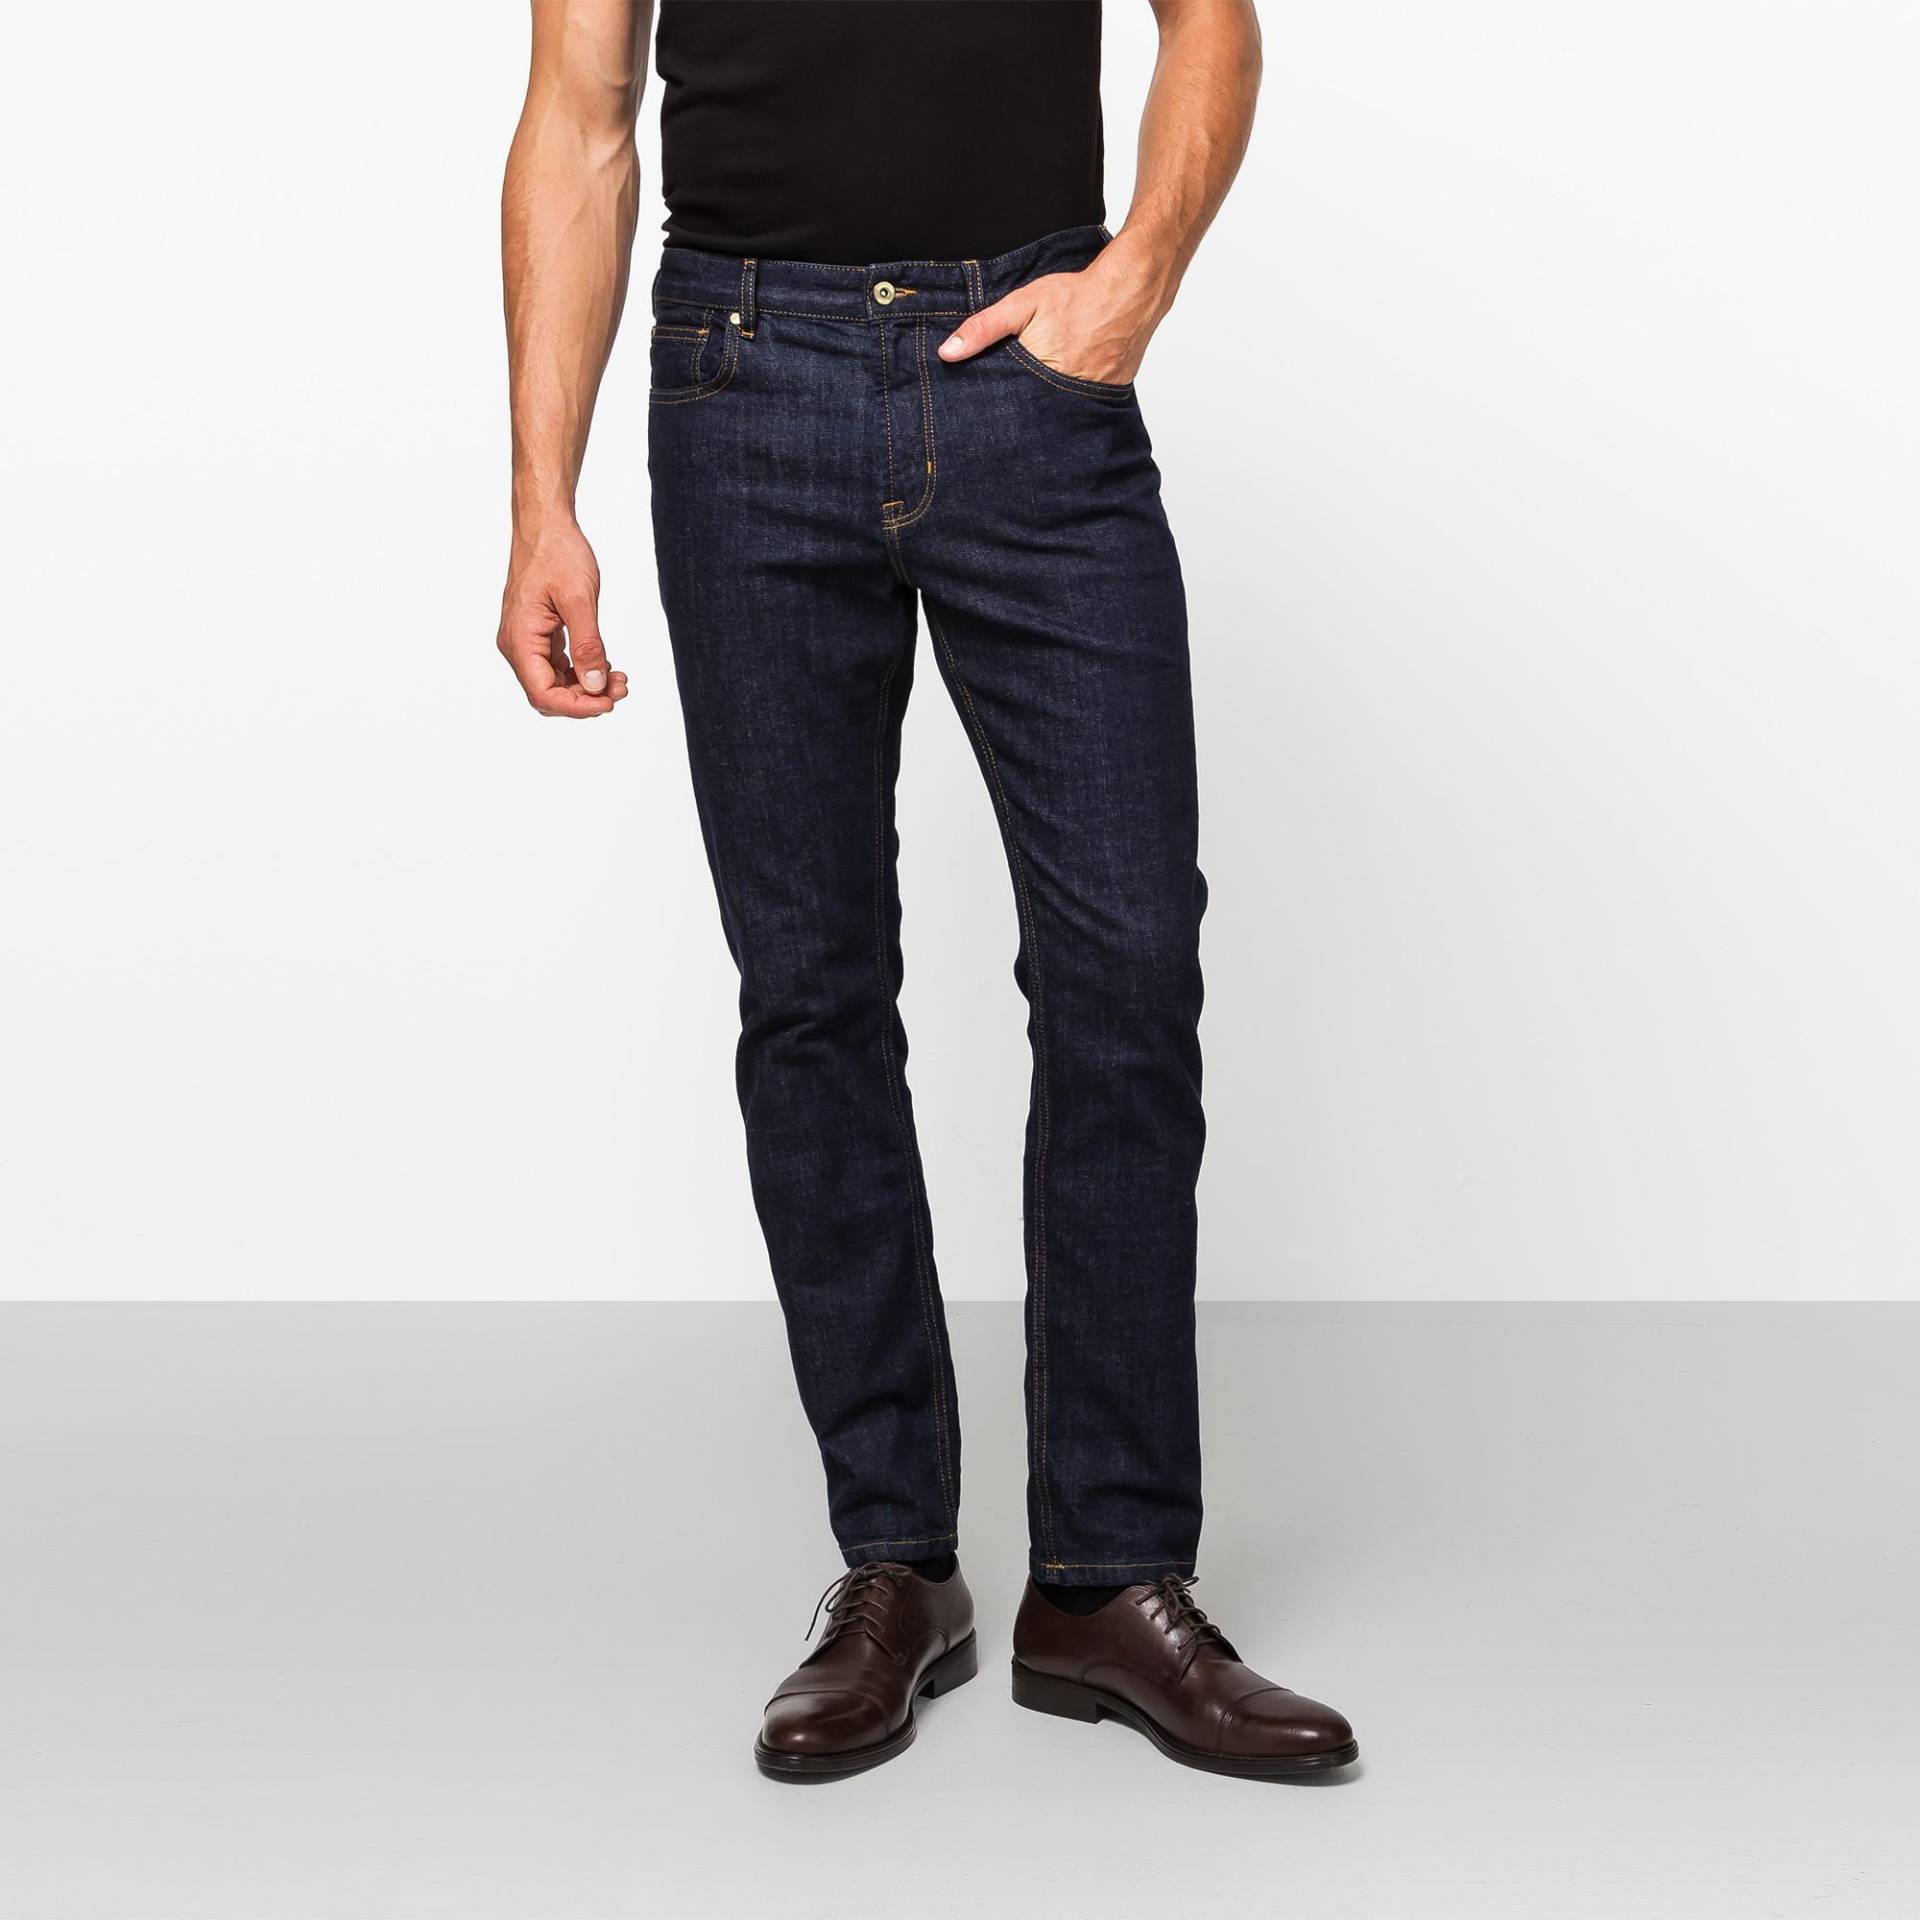 Jeans, Slim Fit Herren Blau Denim Dunkel L30/W38 von Manor Man